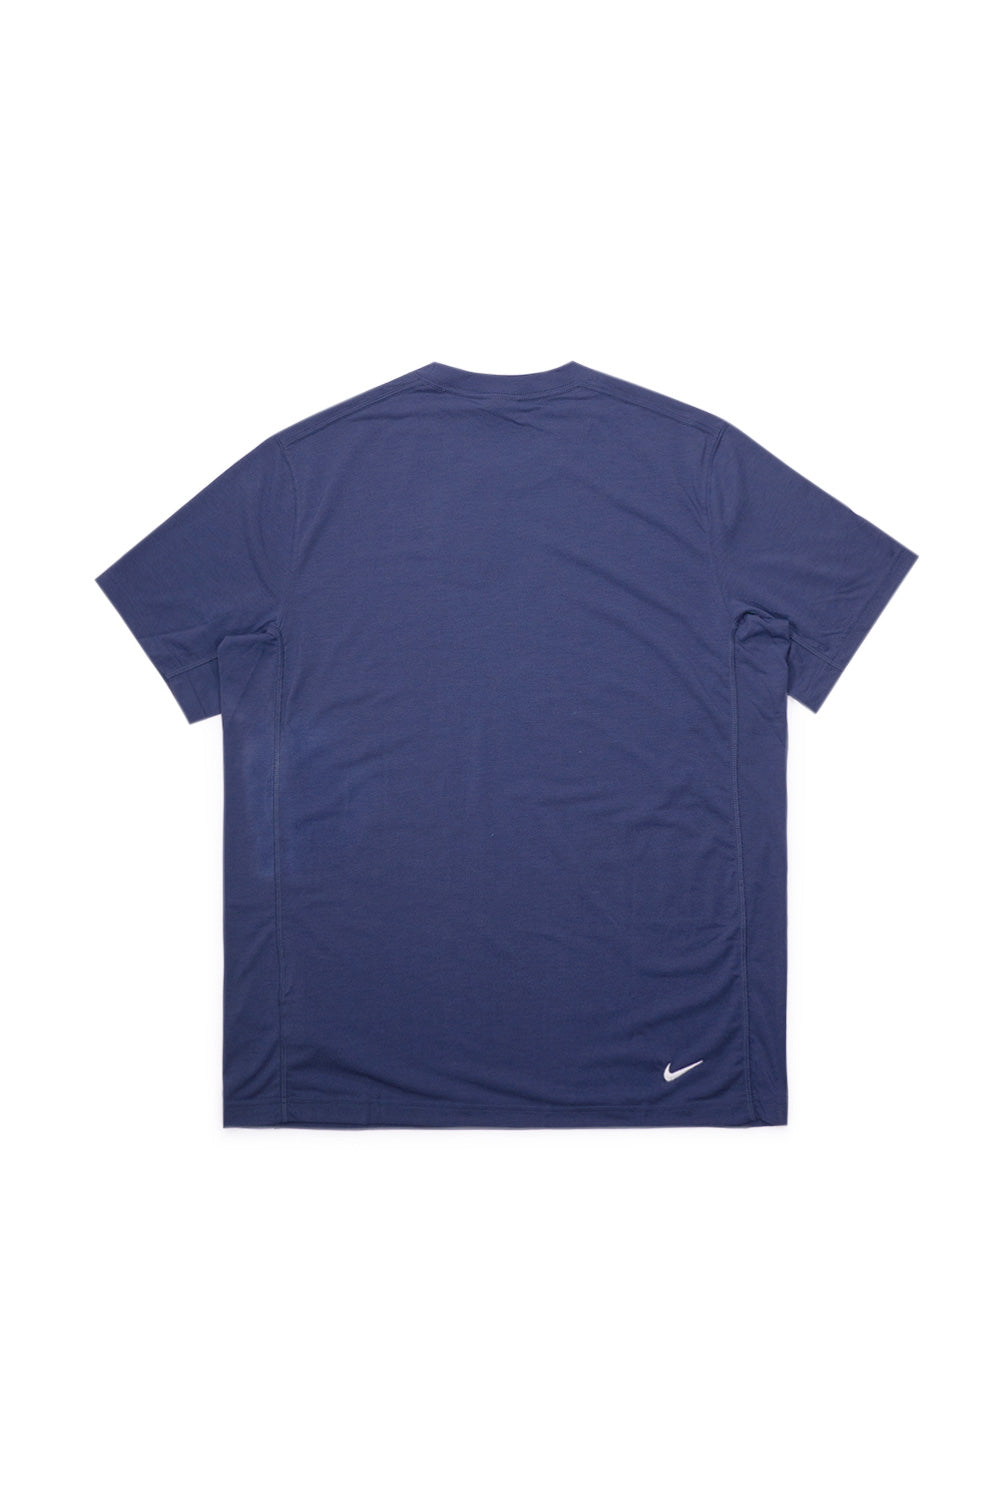 Nike ACG Dri-Fit ADV Goat Rocks T-Shirt Thunder Blue / Summit White - BONKERS